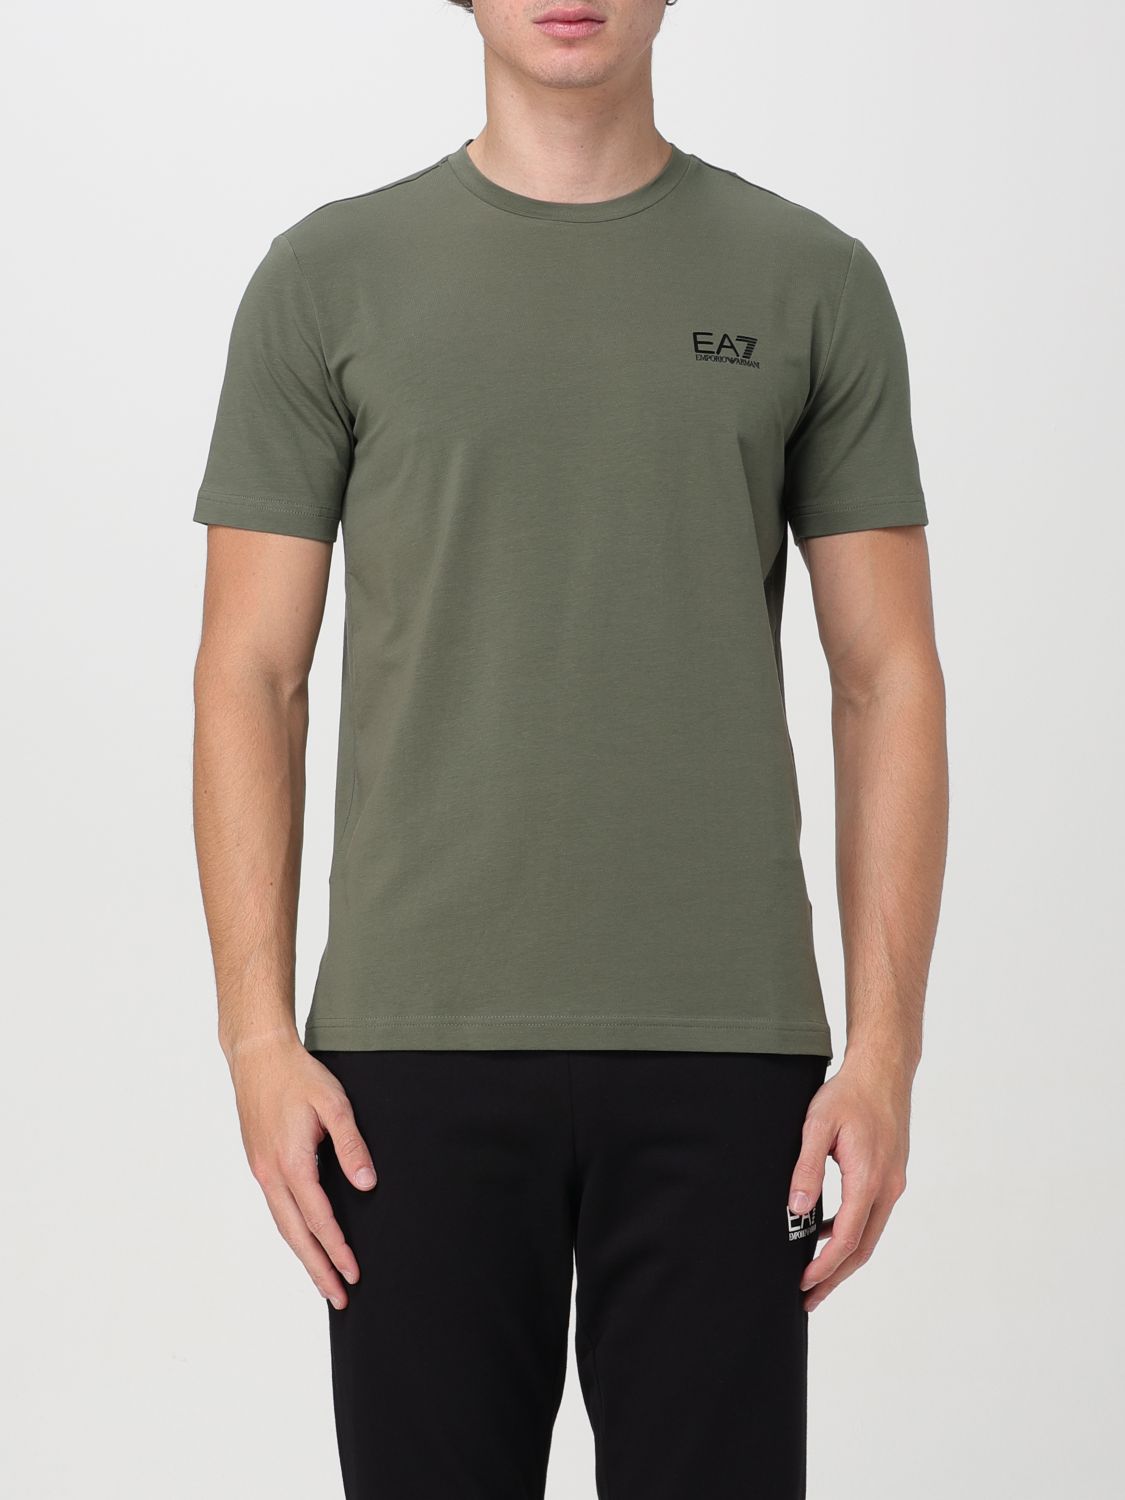 EA7 T-Shirt EA7 Men color Military